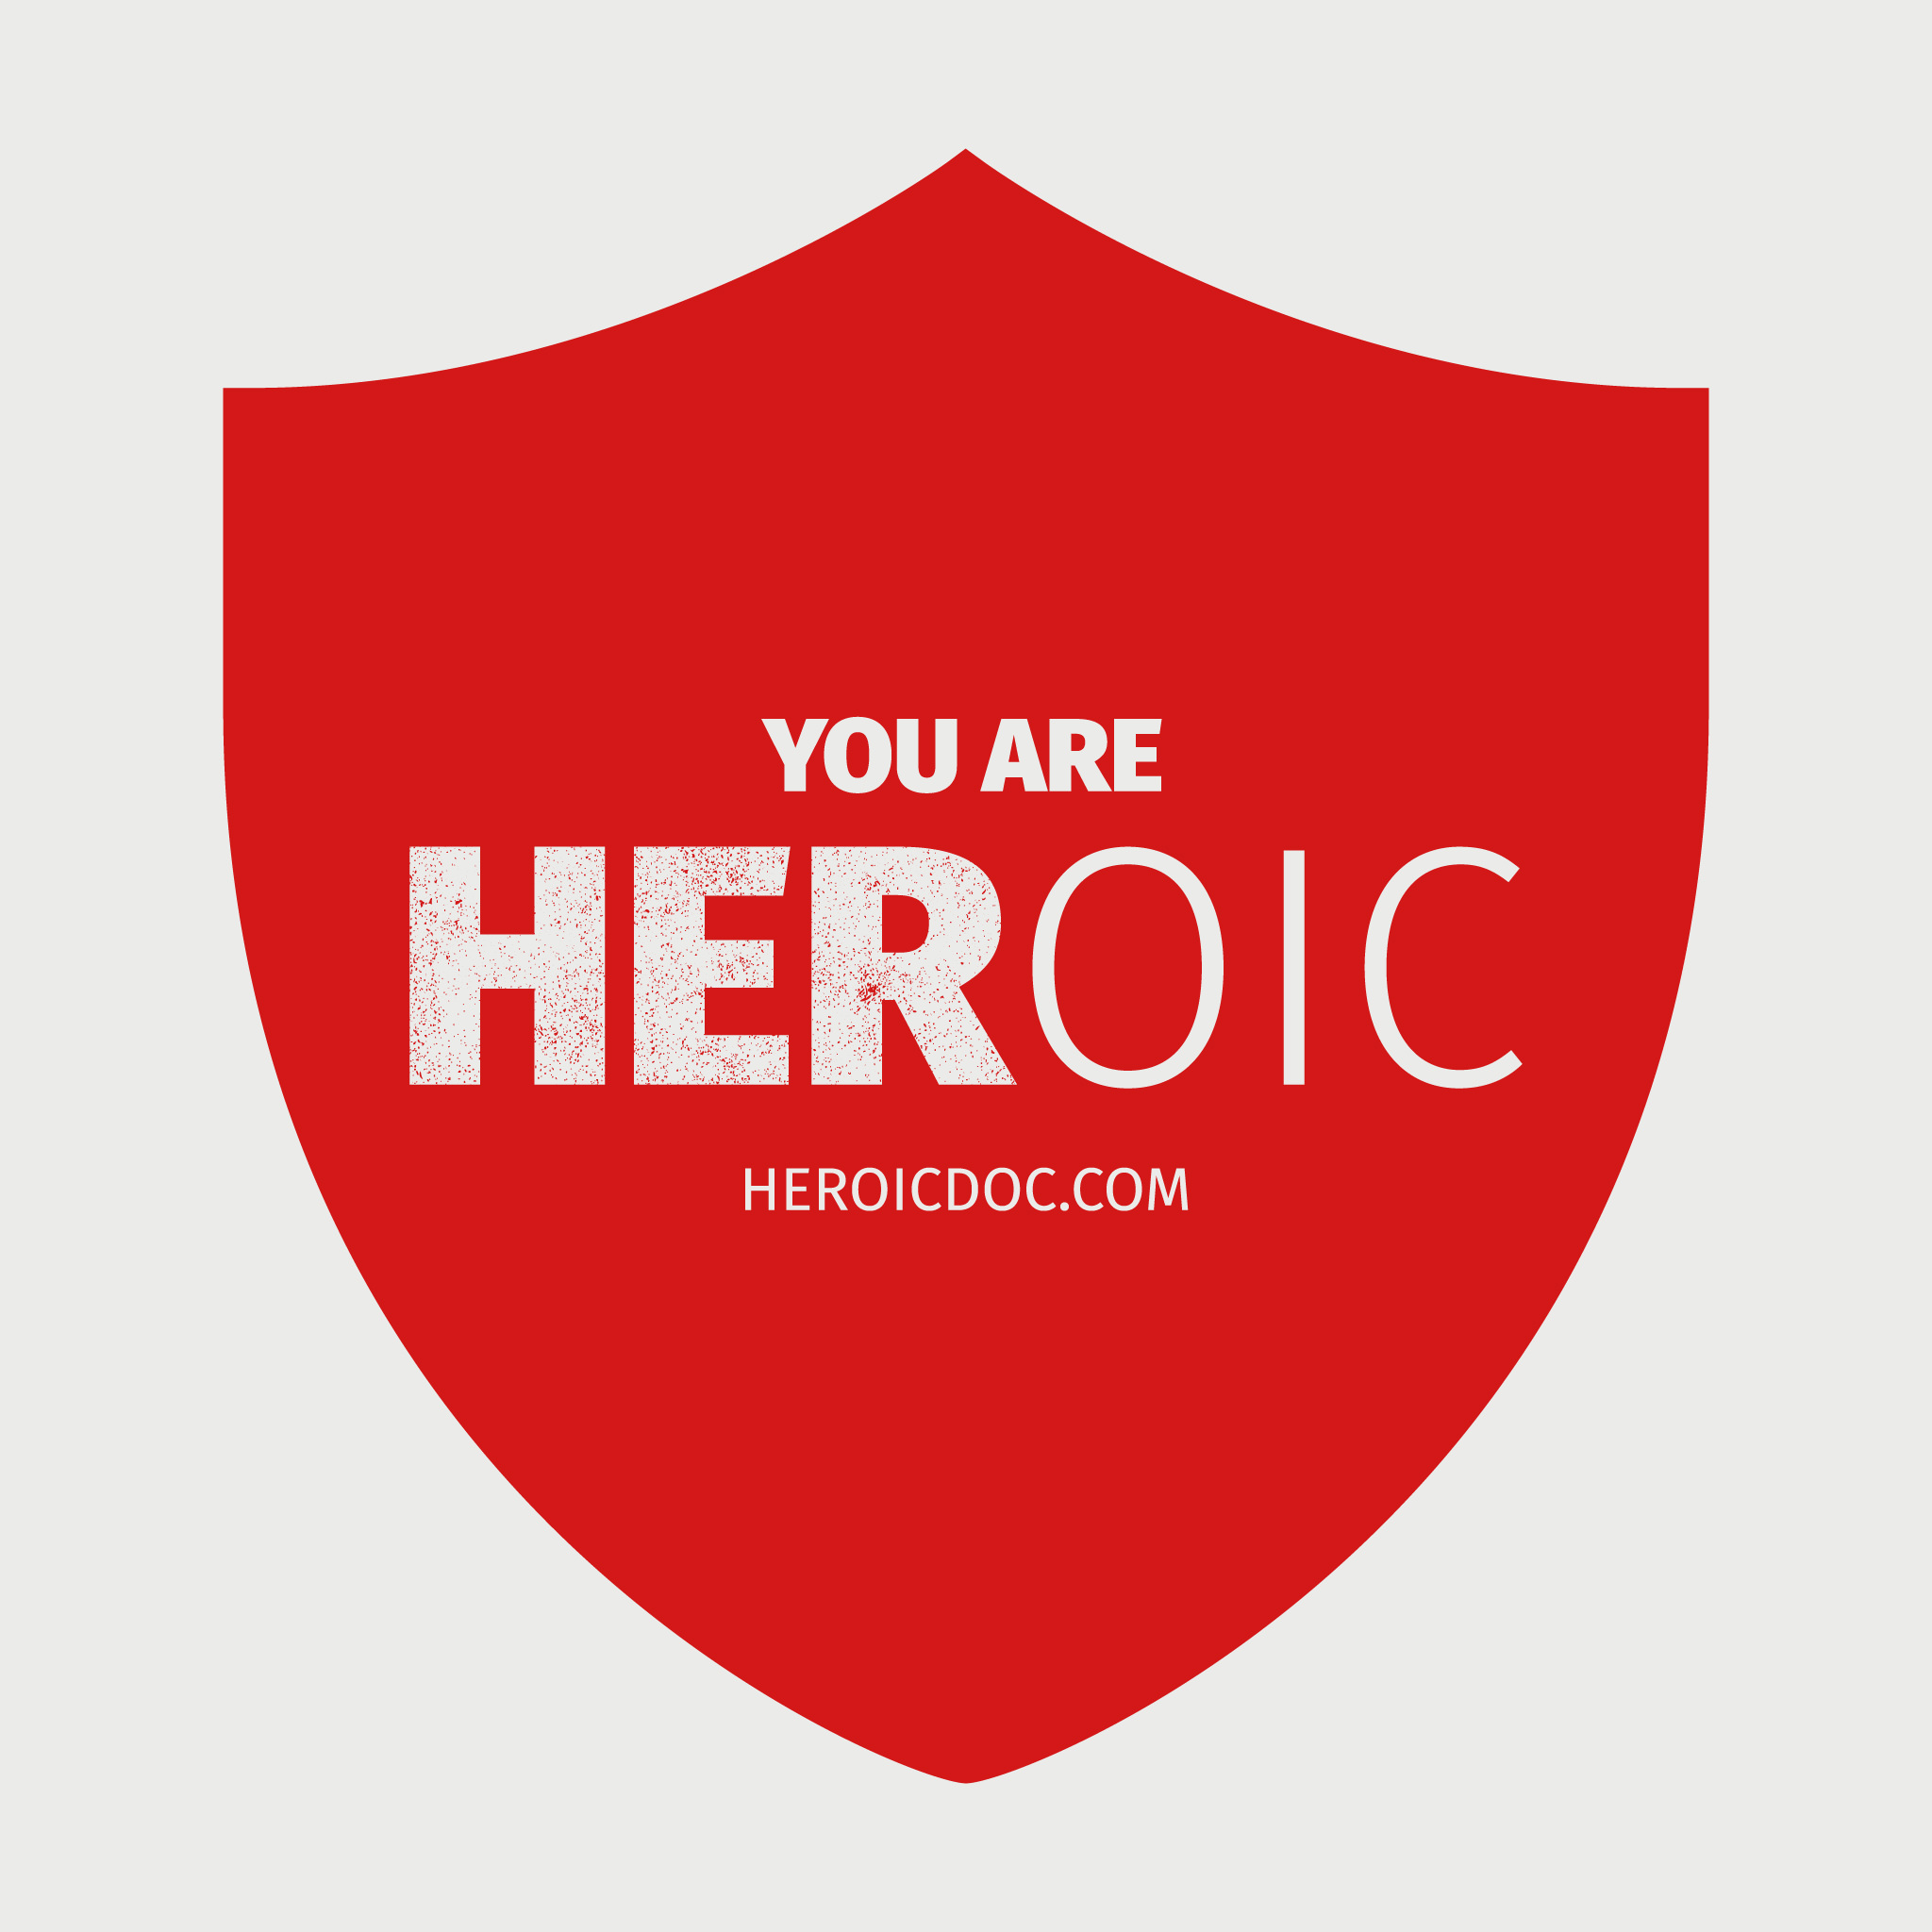 HEROIC - IG Post.jpg